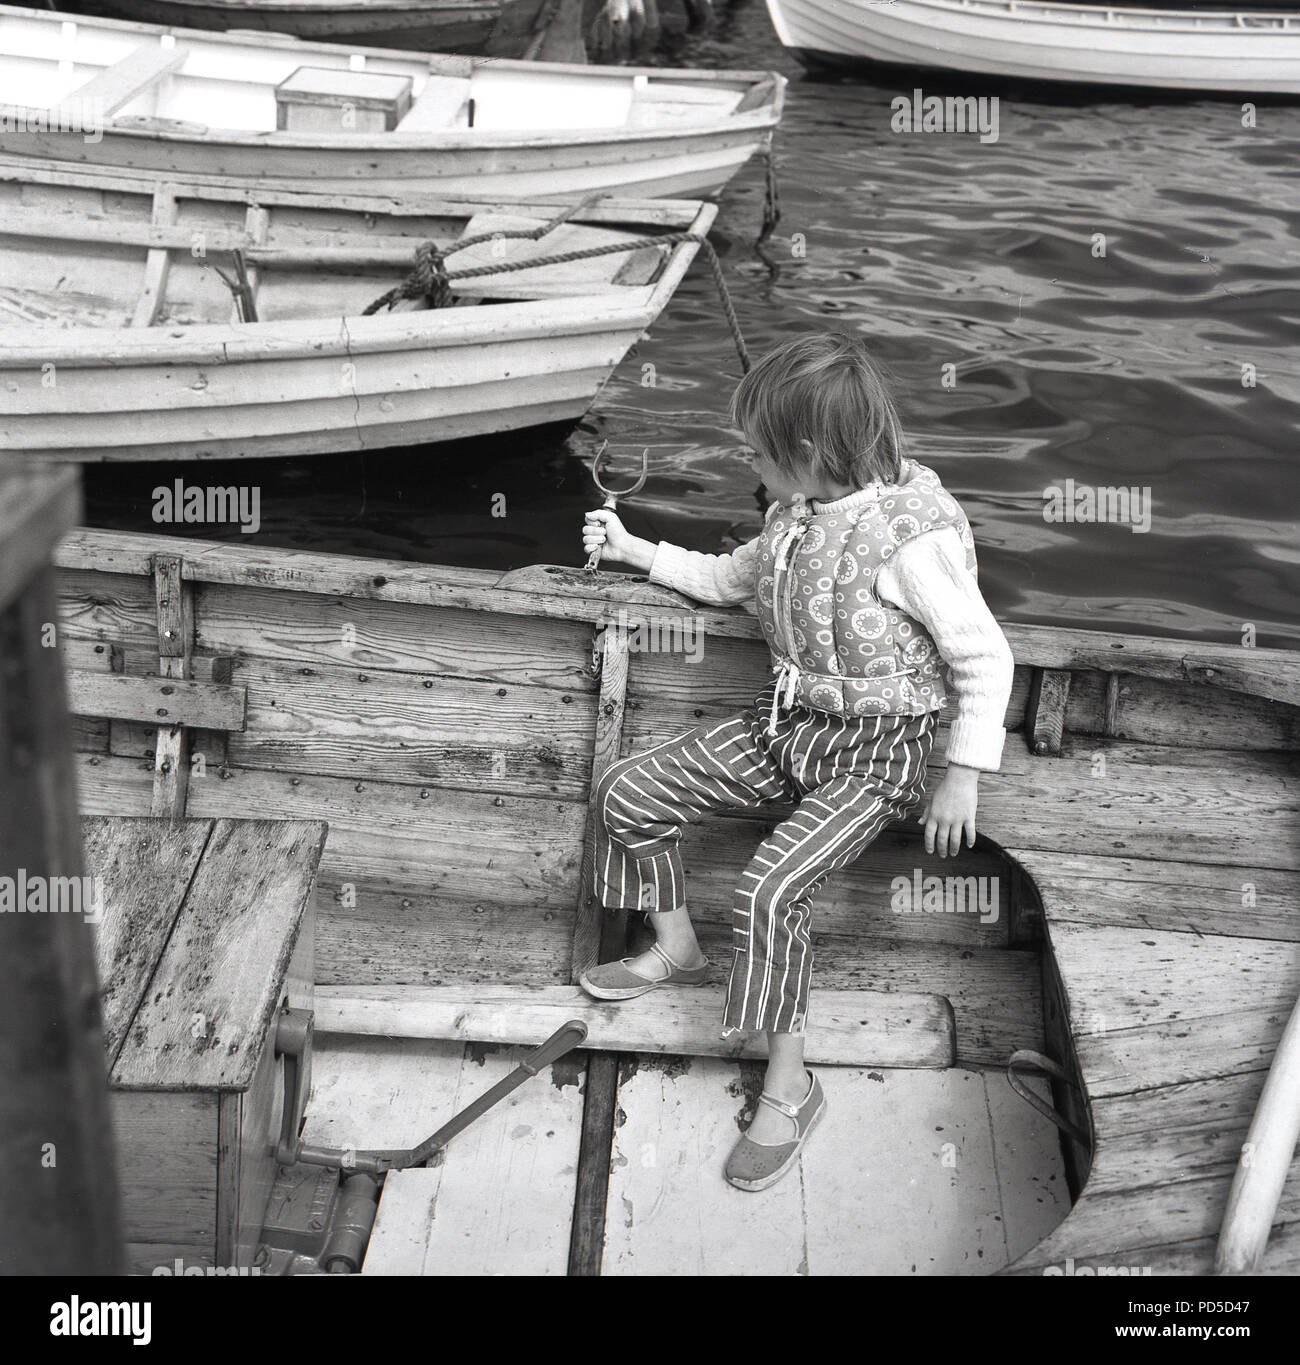 Années 1960, jeune fille stting sur son propre avec son gilet sans manches sur à l'arrière d'un bateau à rames en bois dans un port, England, UK. Banque D'Images